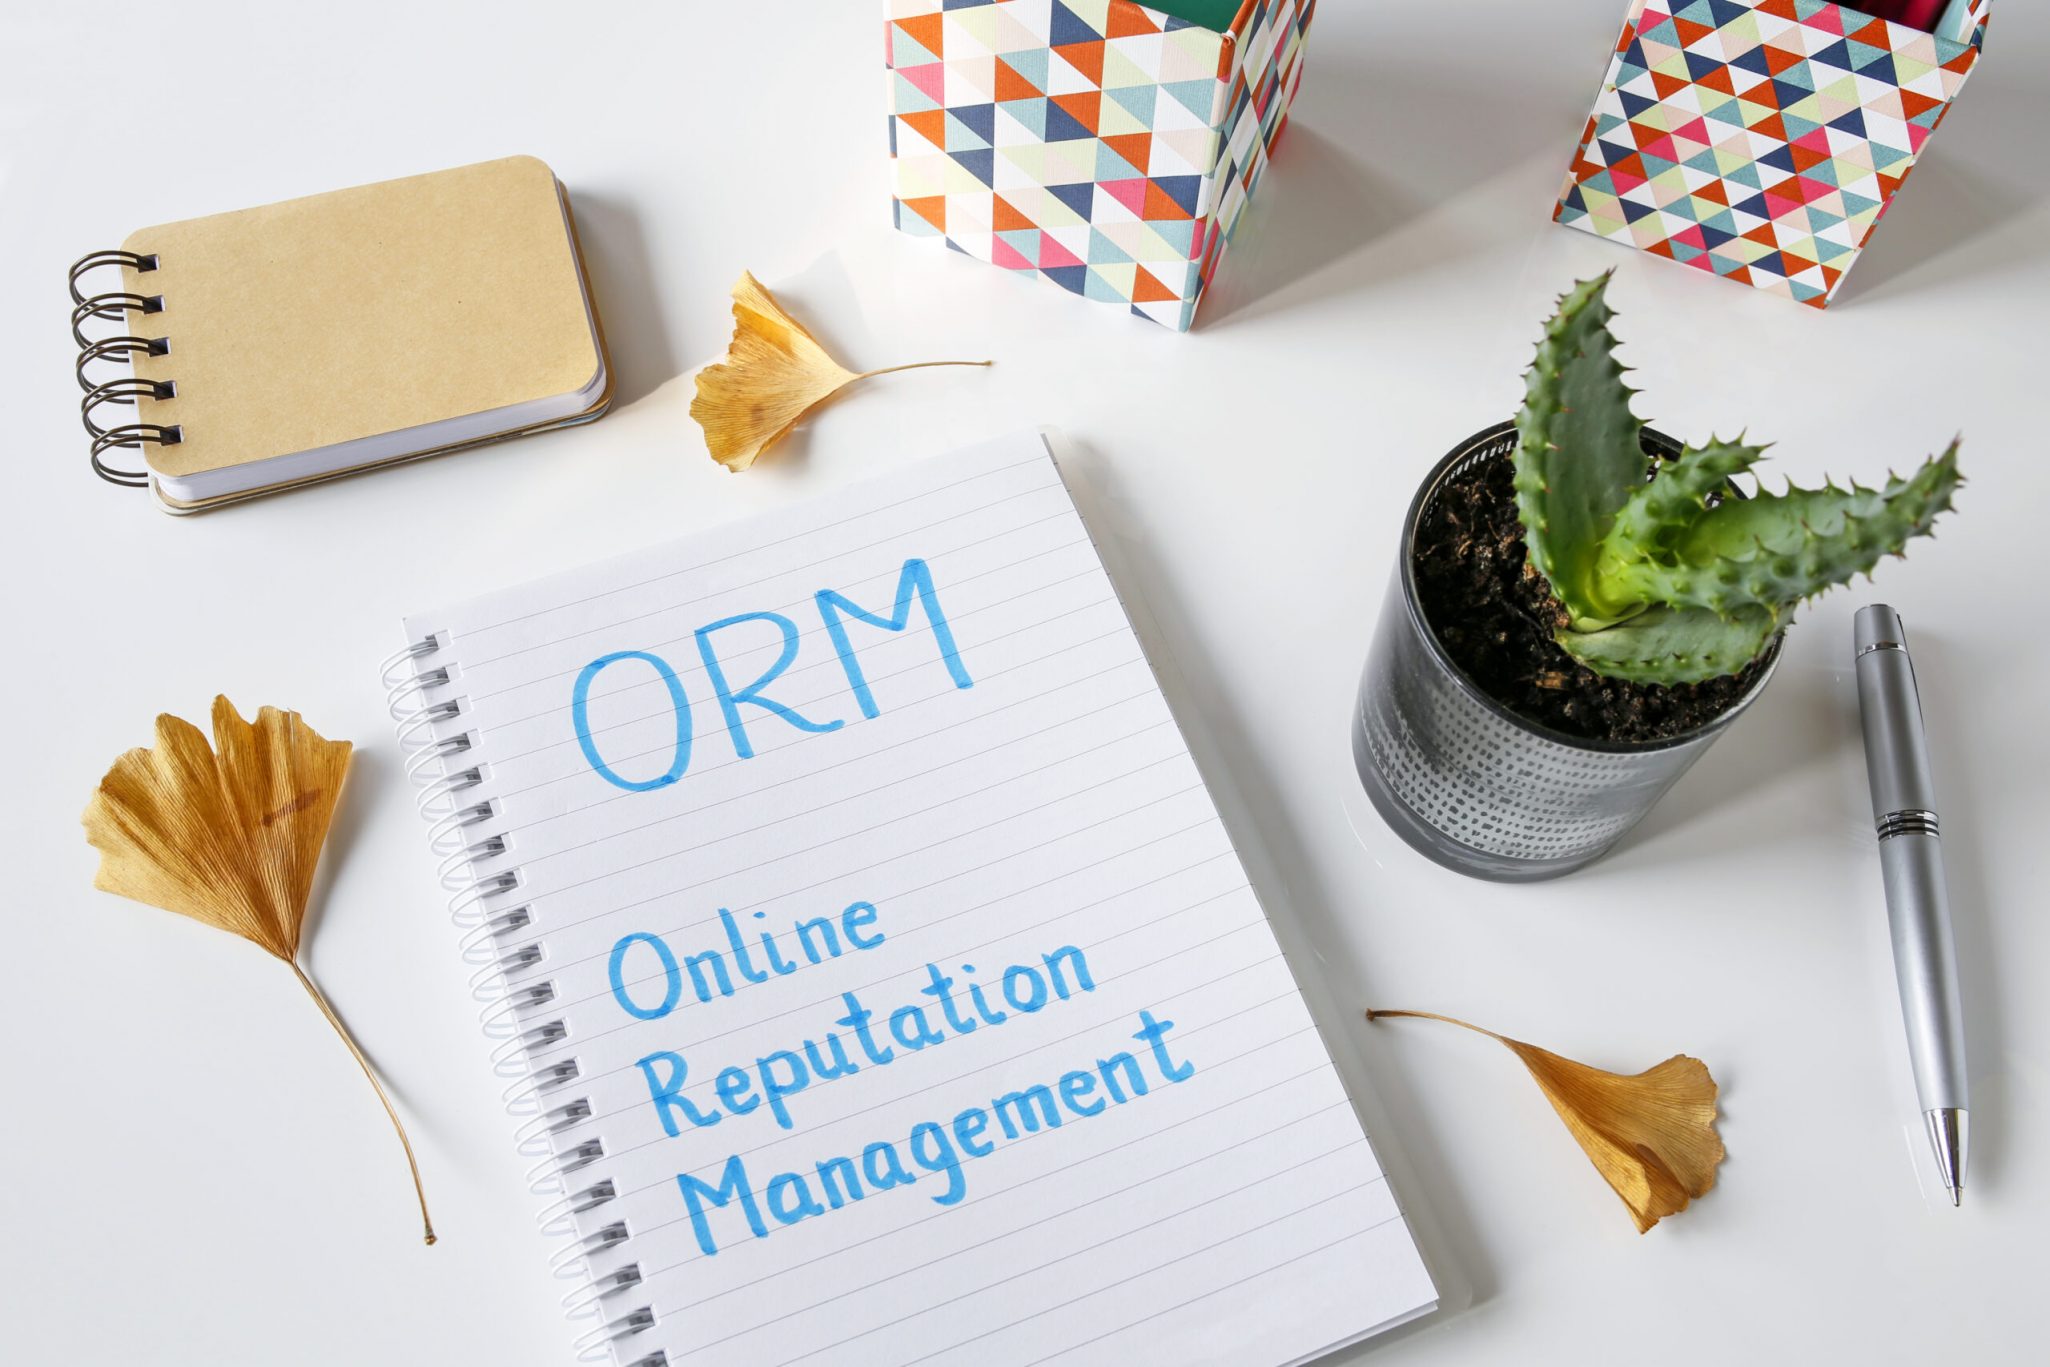 online reputation management services, orm, seo services